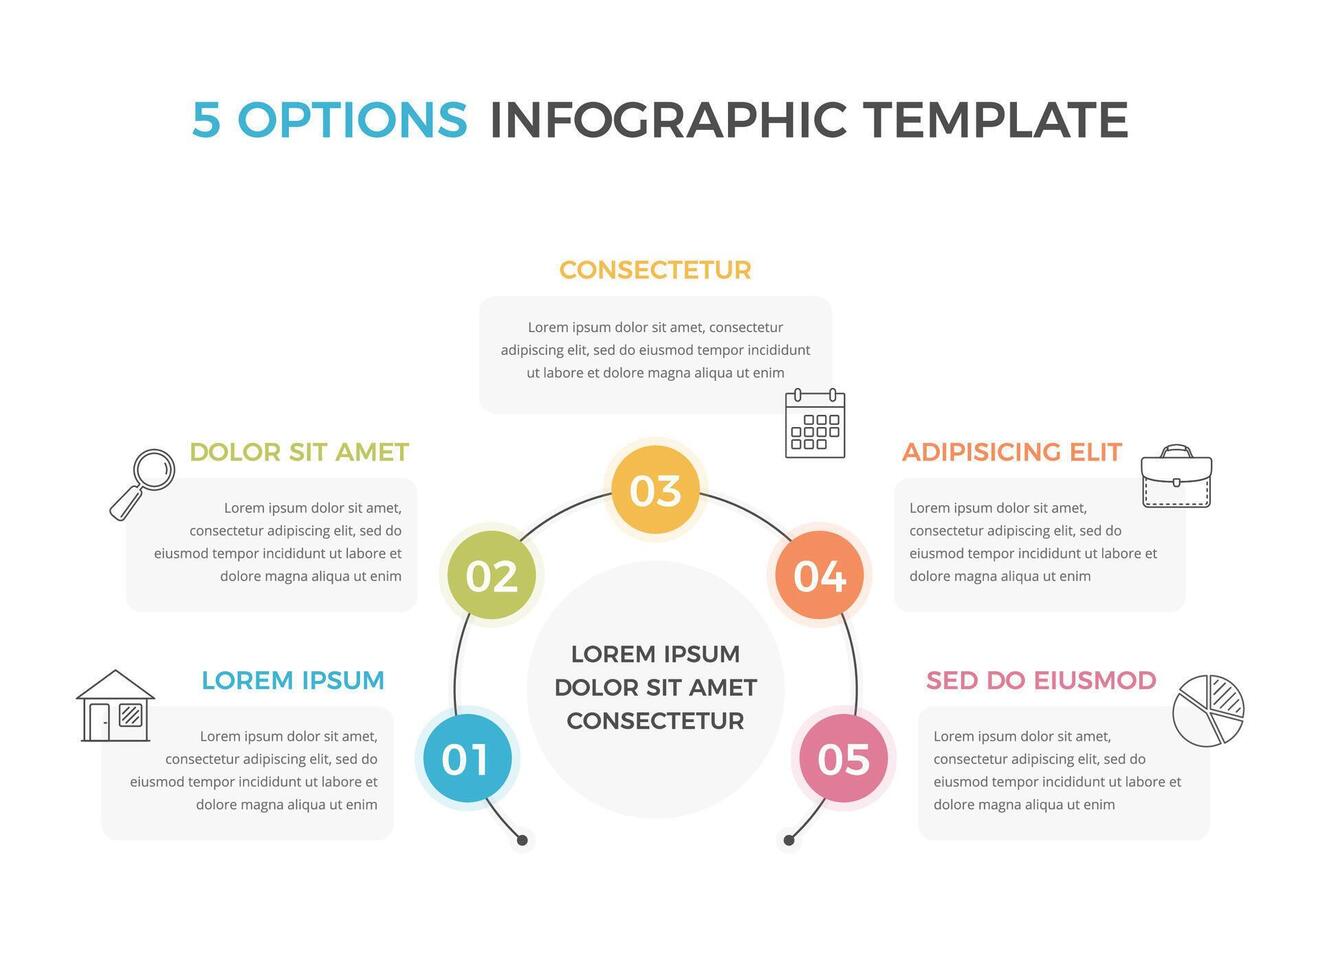 infografía modelo con 5 5 opciones con texto y íconos vector